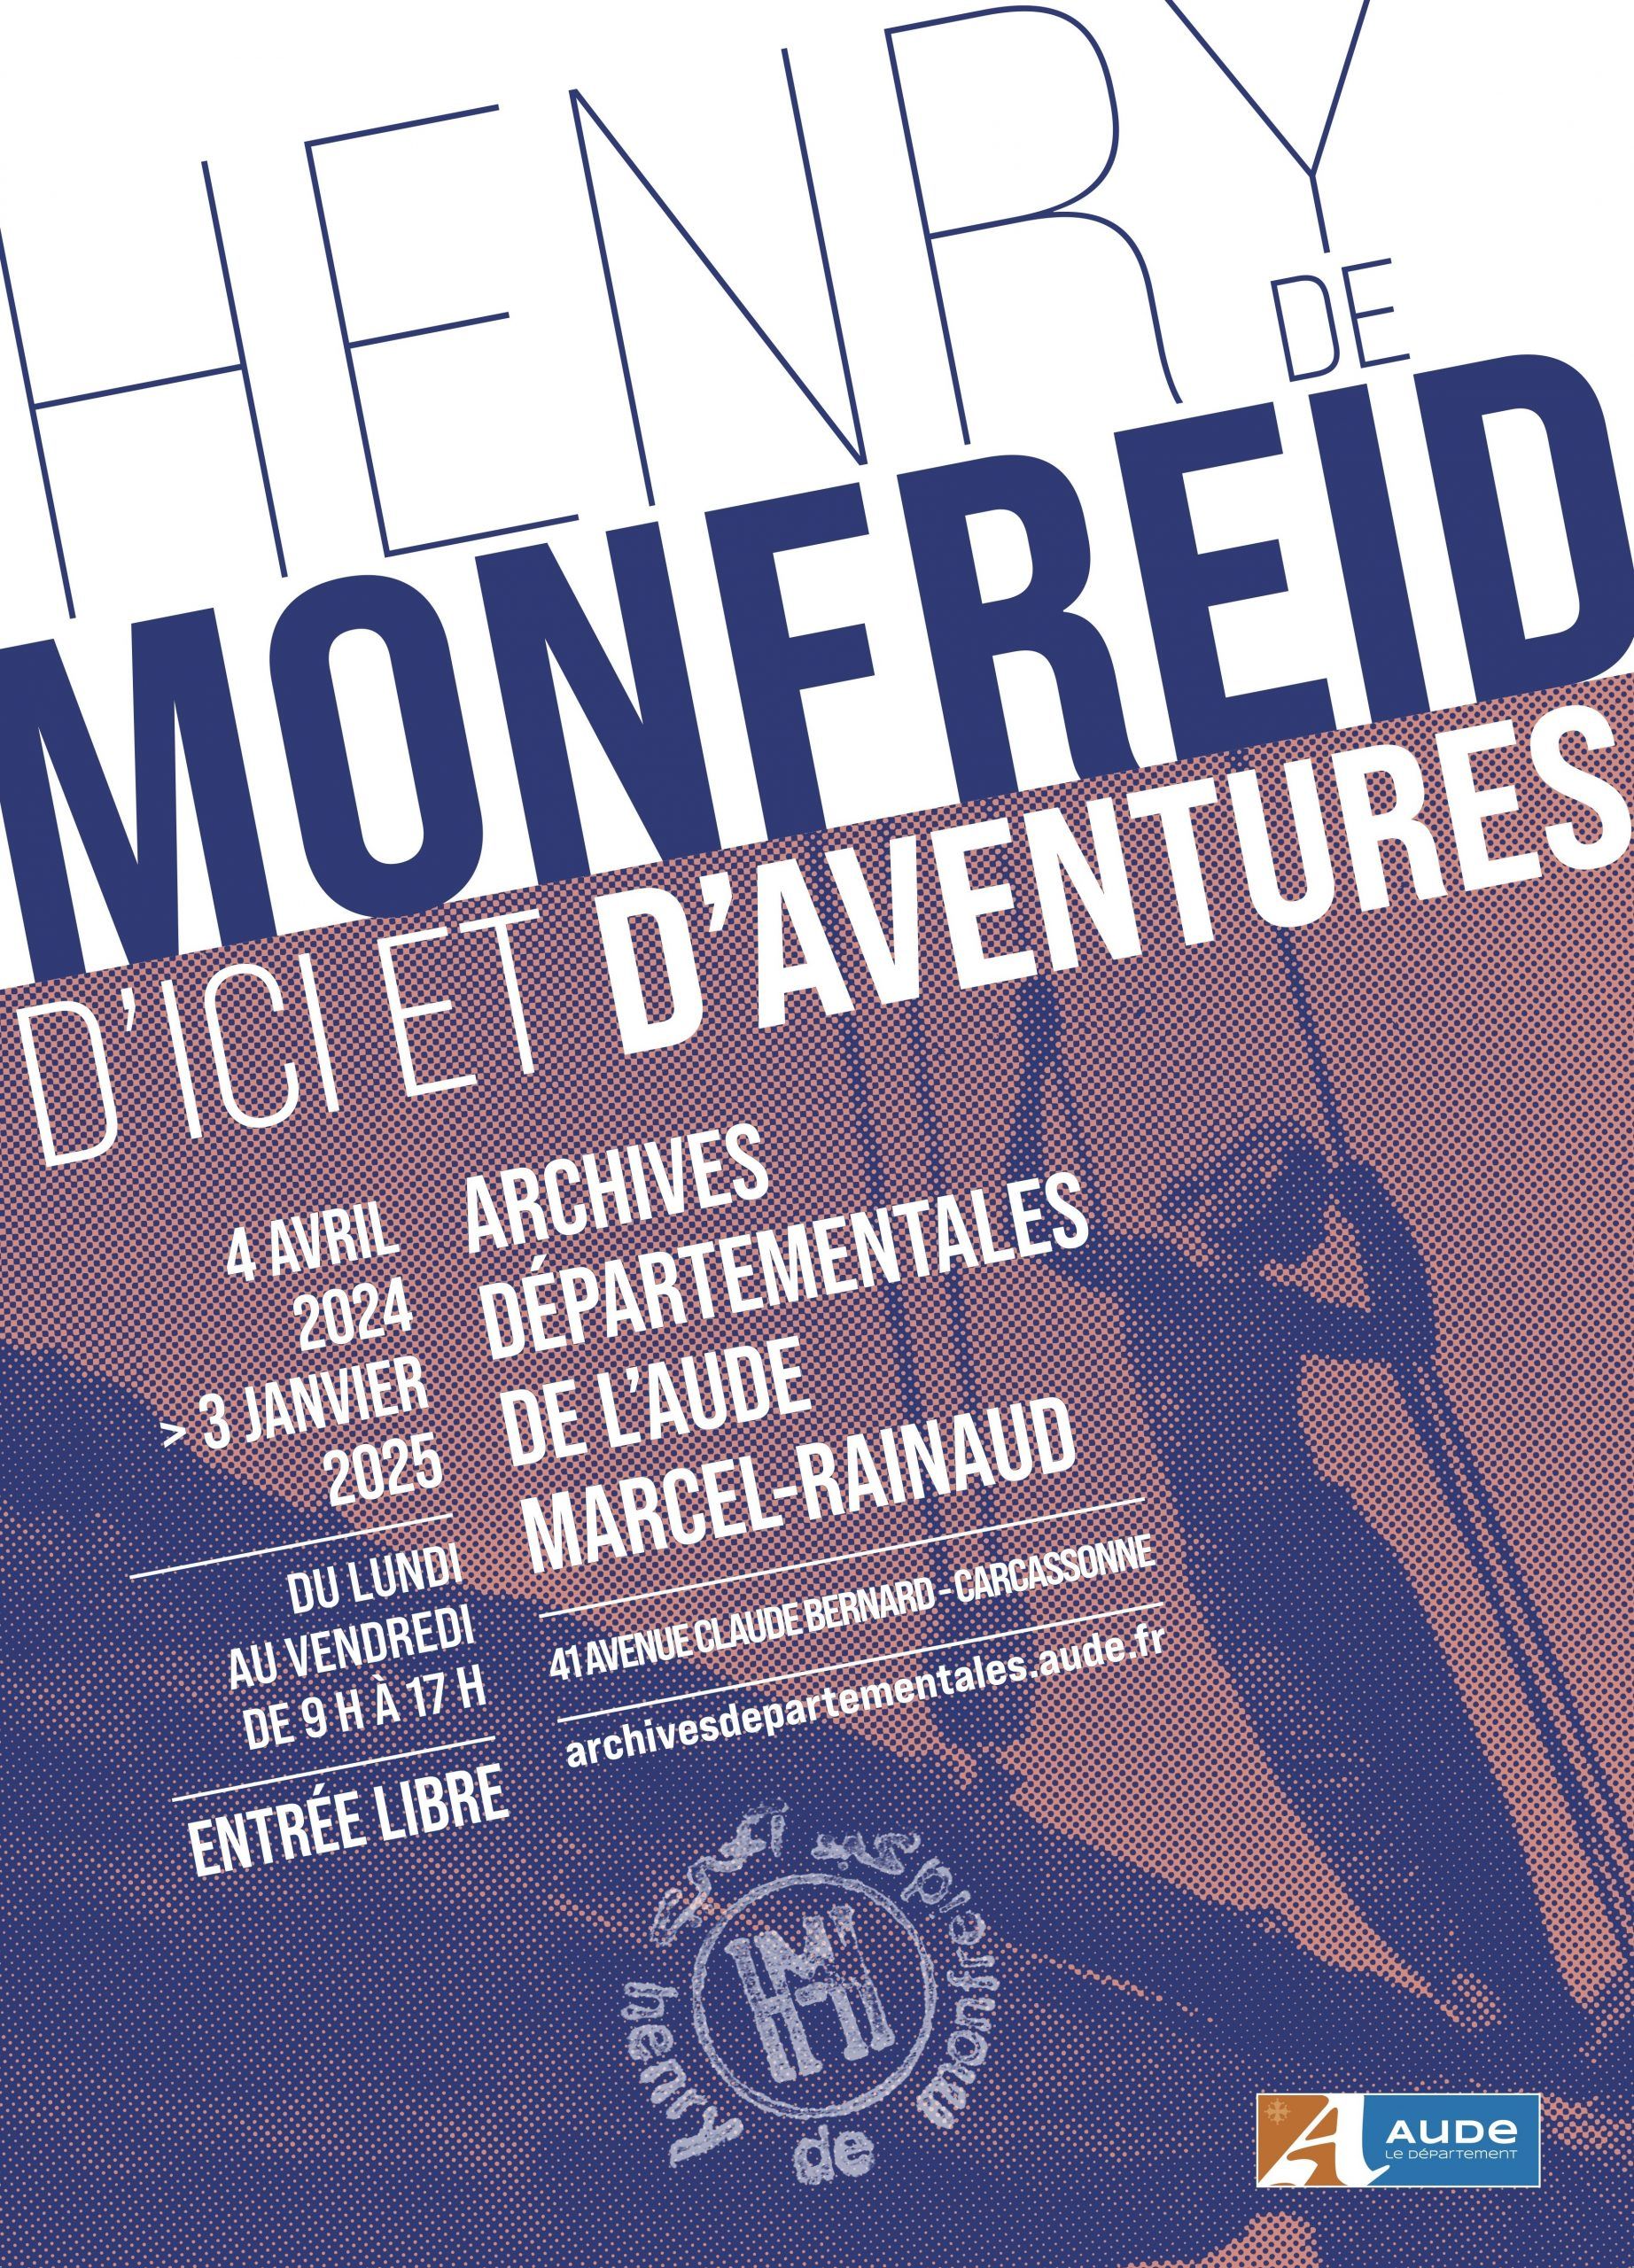 Archives Départementales de l'Aude Marcel-Rainaud - Henry de Monfreid